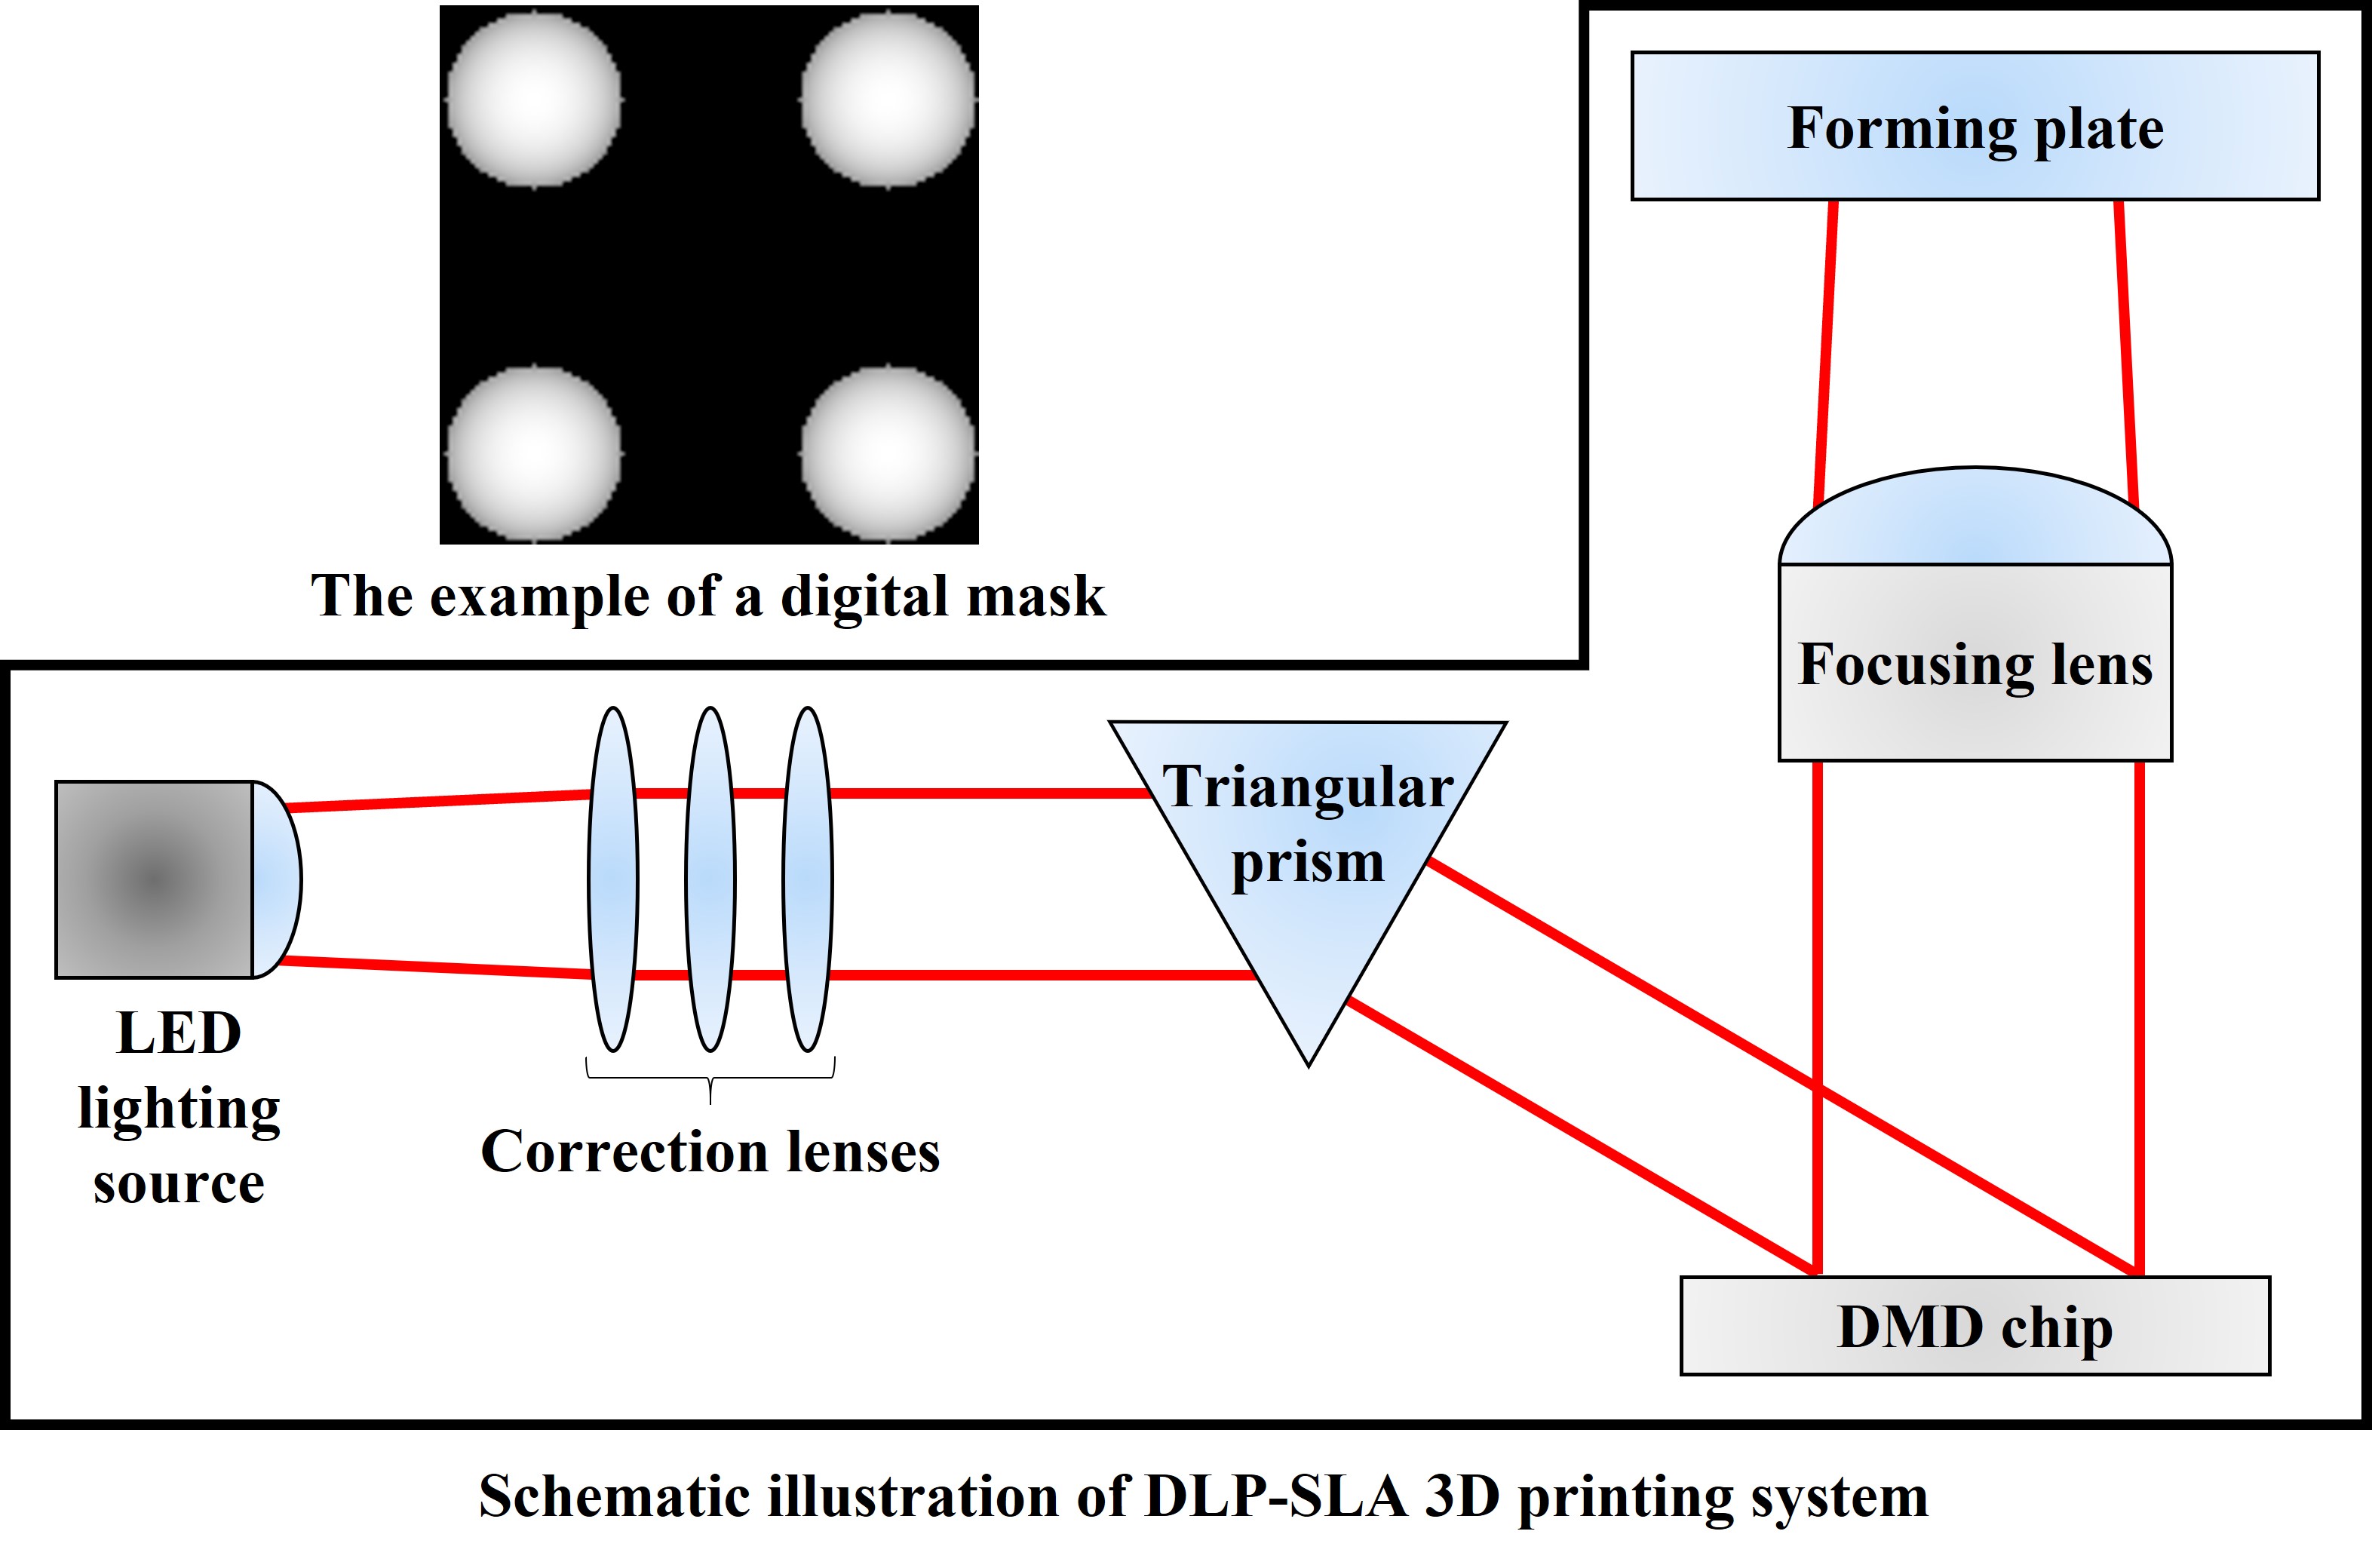 整合數位灰階、失焦法及新開發光固化樹脂於立體微影積層製造技術上，用於超高速製造高光學性能之微透鏡陣列